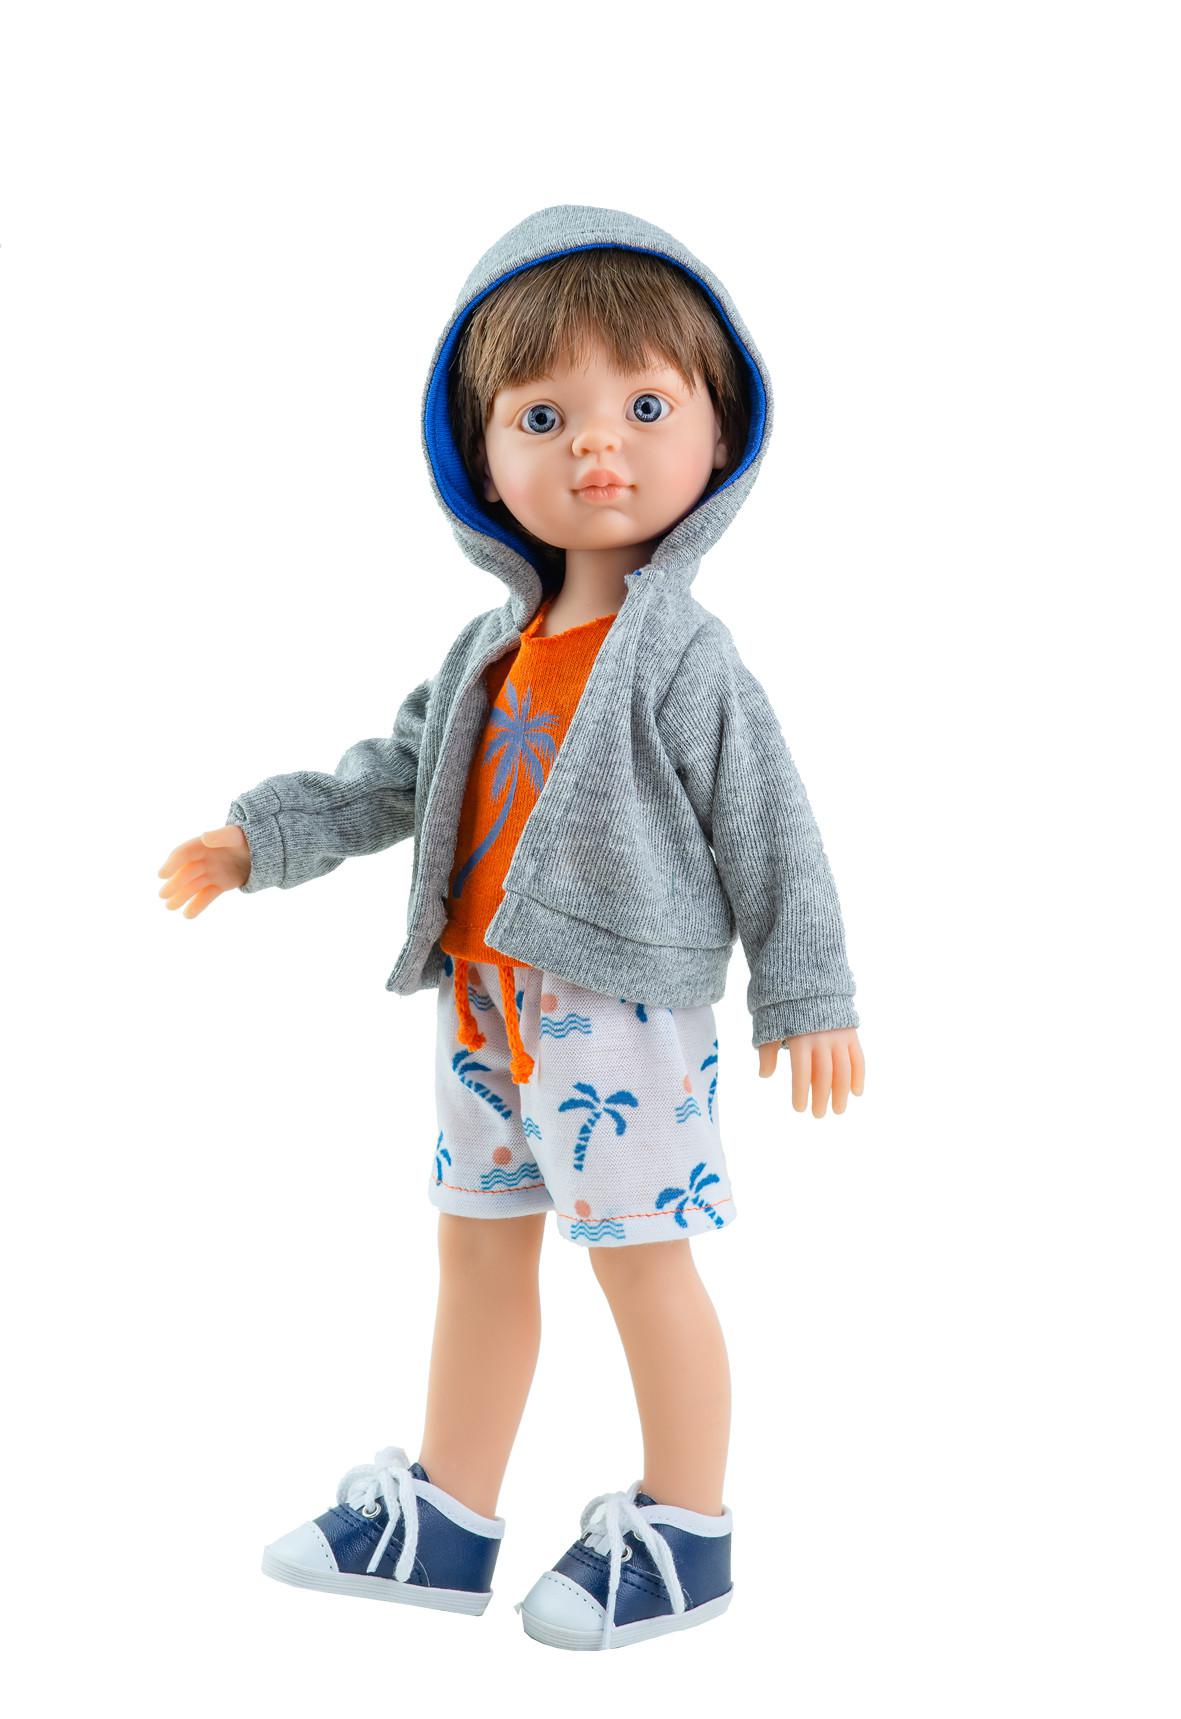 Одежда для кукол 32 см. Кукла Паола Рейна мальчик. Паола Рейна мальчик. Кукла Paola Reina Висент 32 см 04420. Paola Reina кукла мальчик.